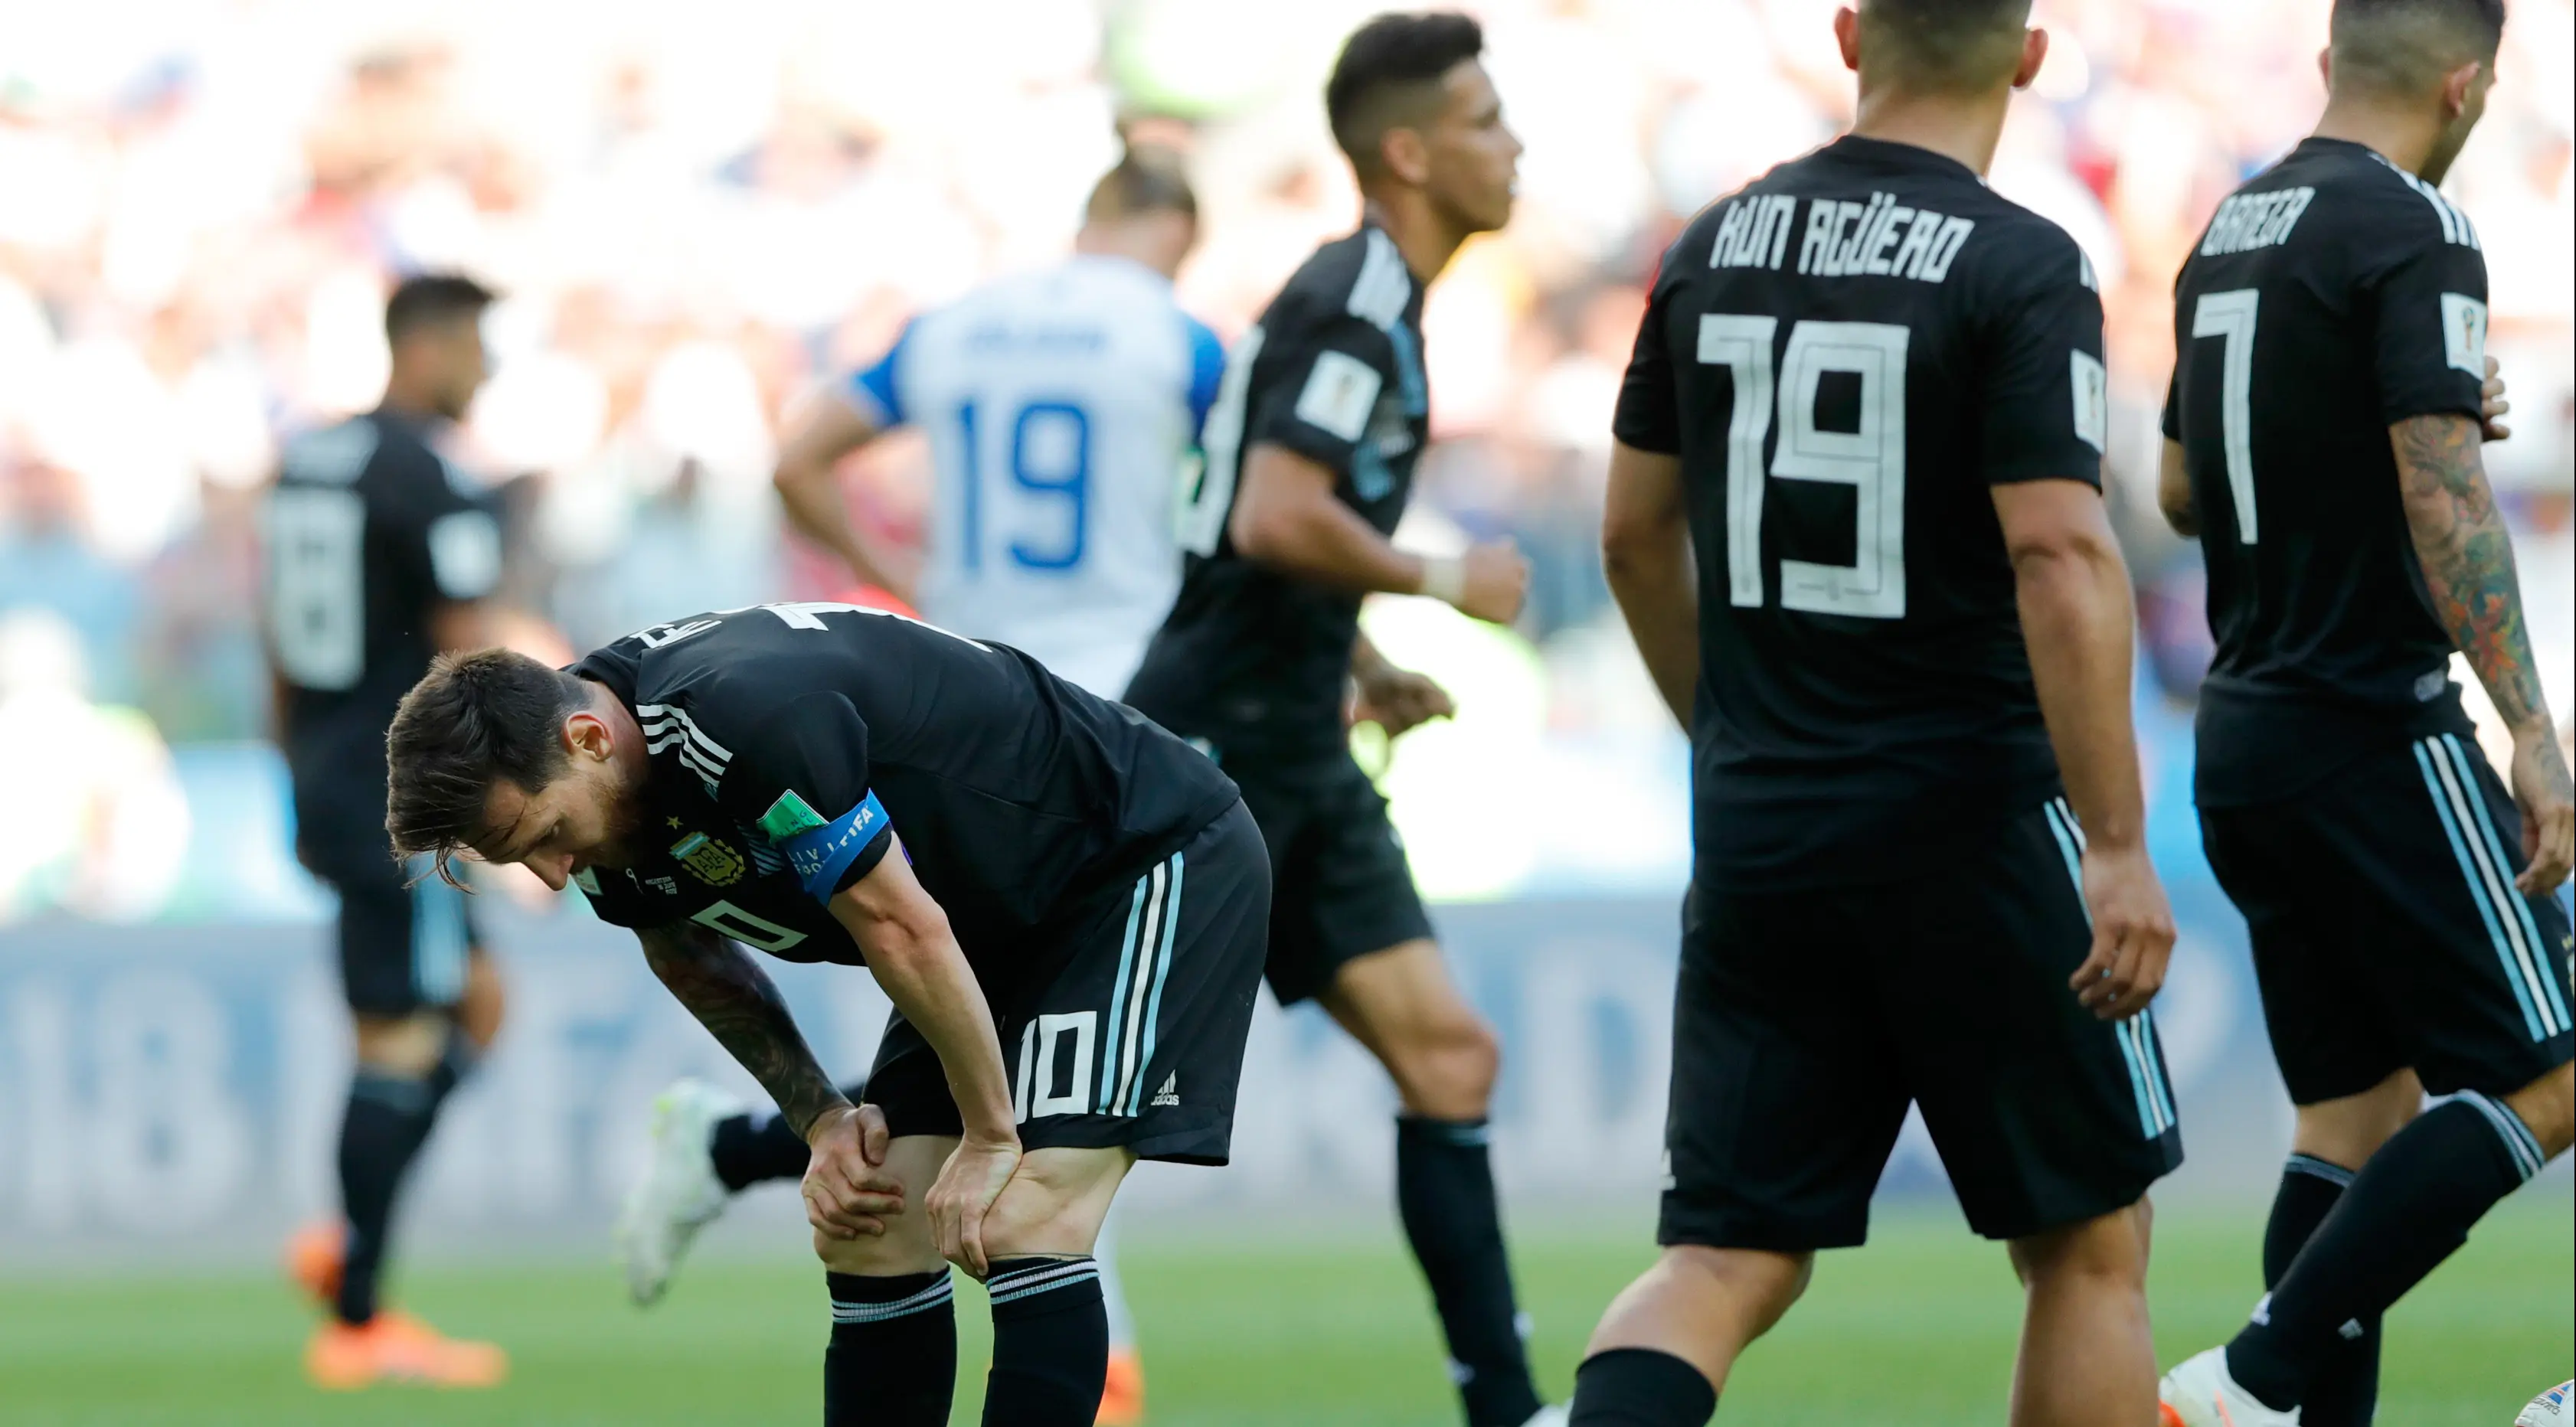 Pemain Argentina, Lionel Messi tertunduk setelah gagal mengeksekusi penalti dalam  laga Grup D Piala Dunia 2018 antara Argentina dan Islandia di Stadion Spartak, Moskow, Rusia, Sabtu (16/6). Pertandingan berakhir imbang 1-1. (AP Photo/Ricardo Mazalan)